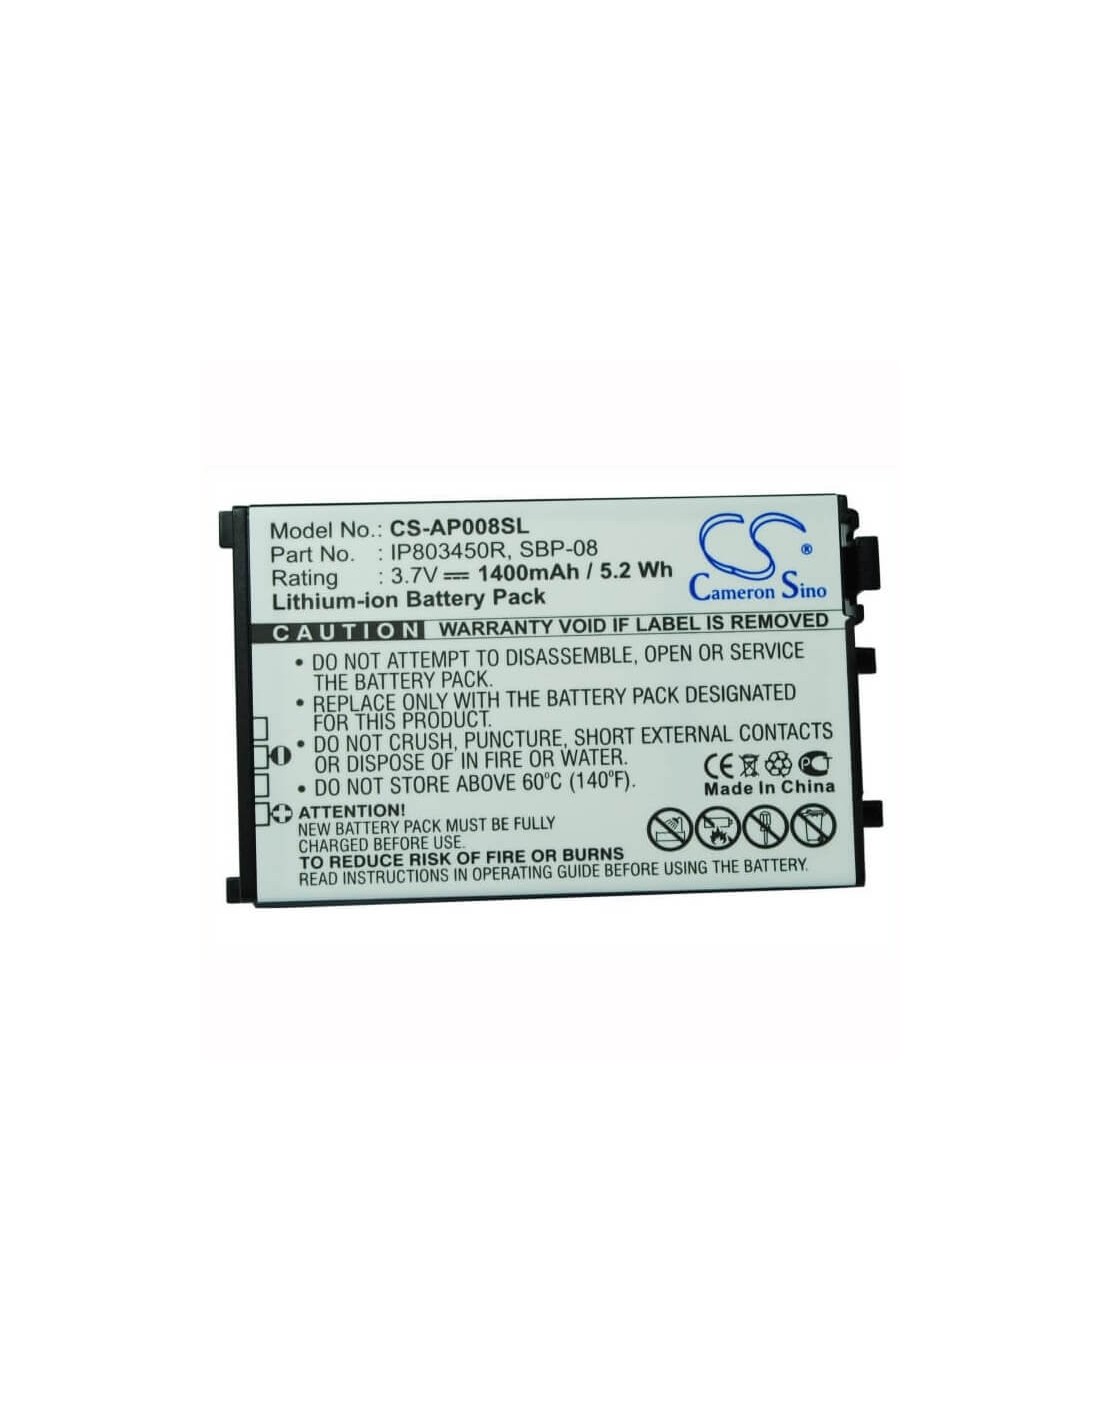 Battery for Asus SBP-08 3.7V, 1400mAh - 5.18Wh